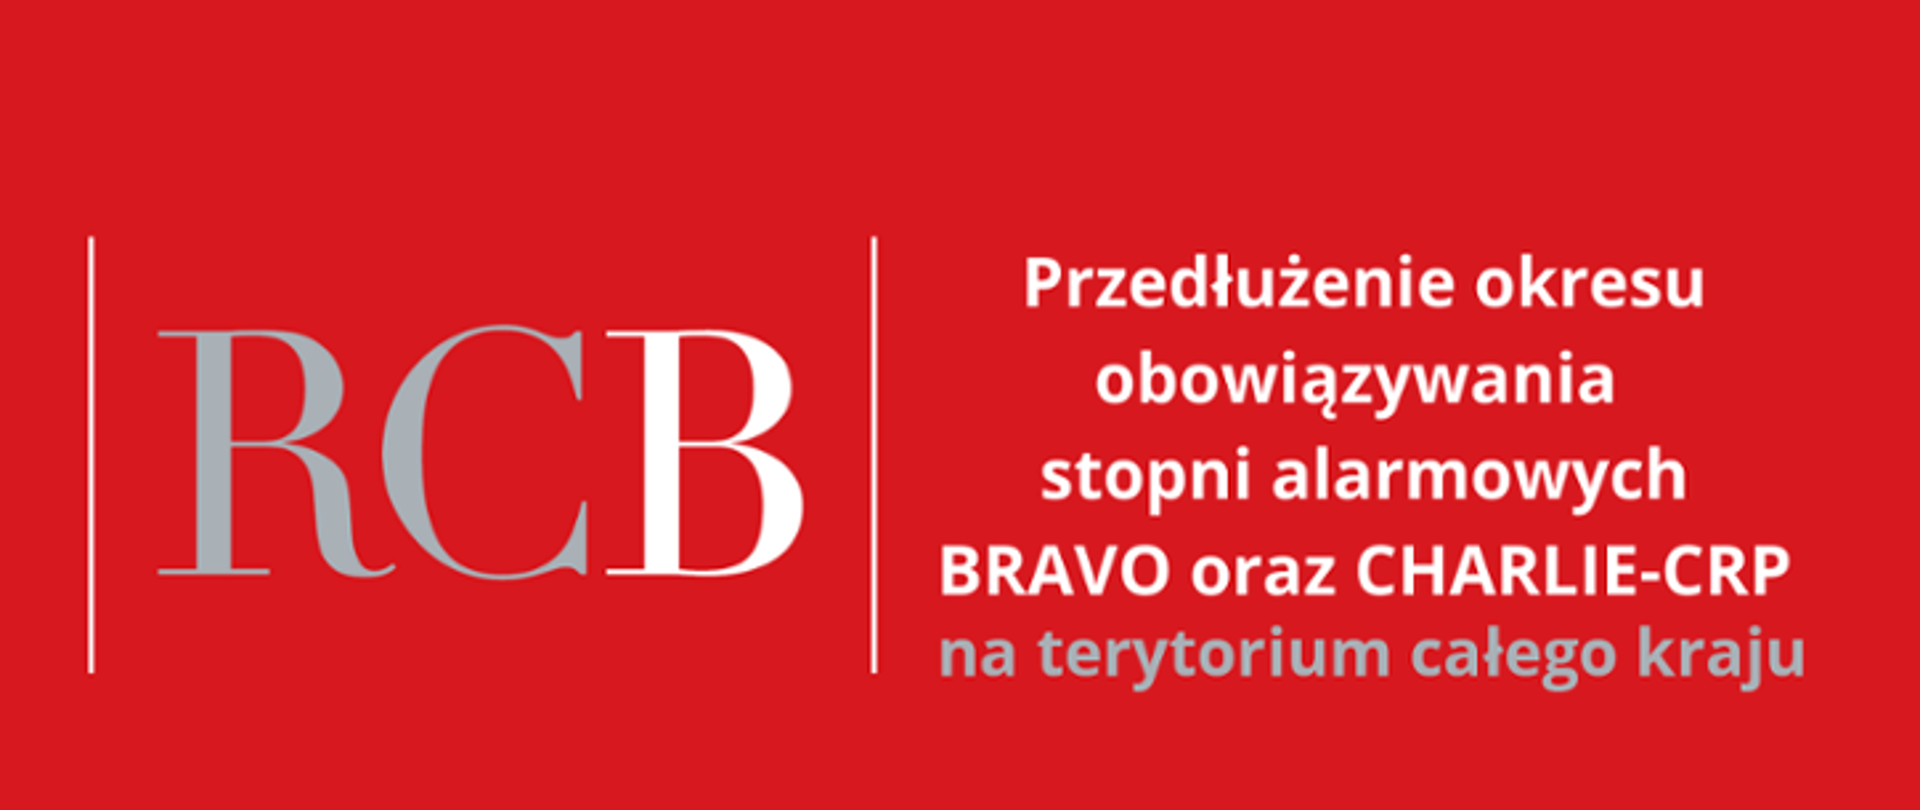 Na czerwonym tle po lewej stronie litery RCB odzielonone białą pionową linią od napisu "Przedłużenie obowiązywania stopni alrmowych BRAVO oraz CHARLIE-CRP na terytorium całego kraju